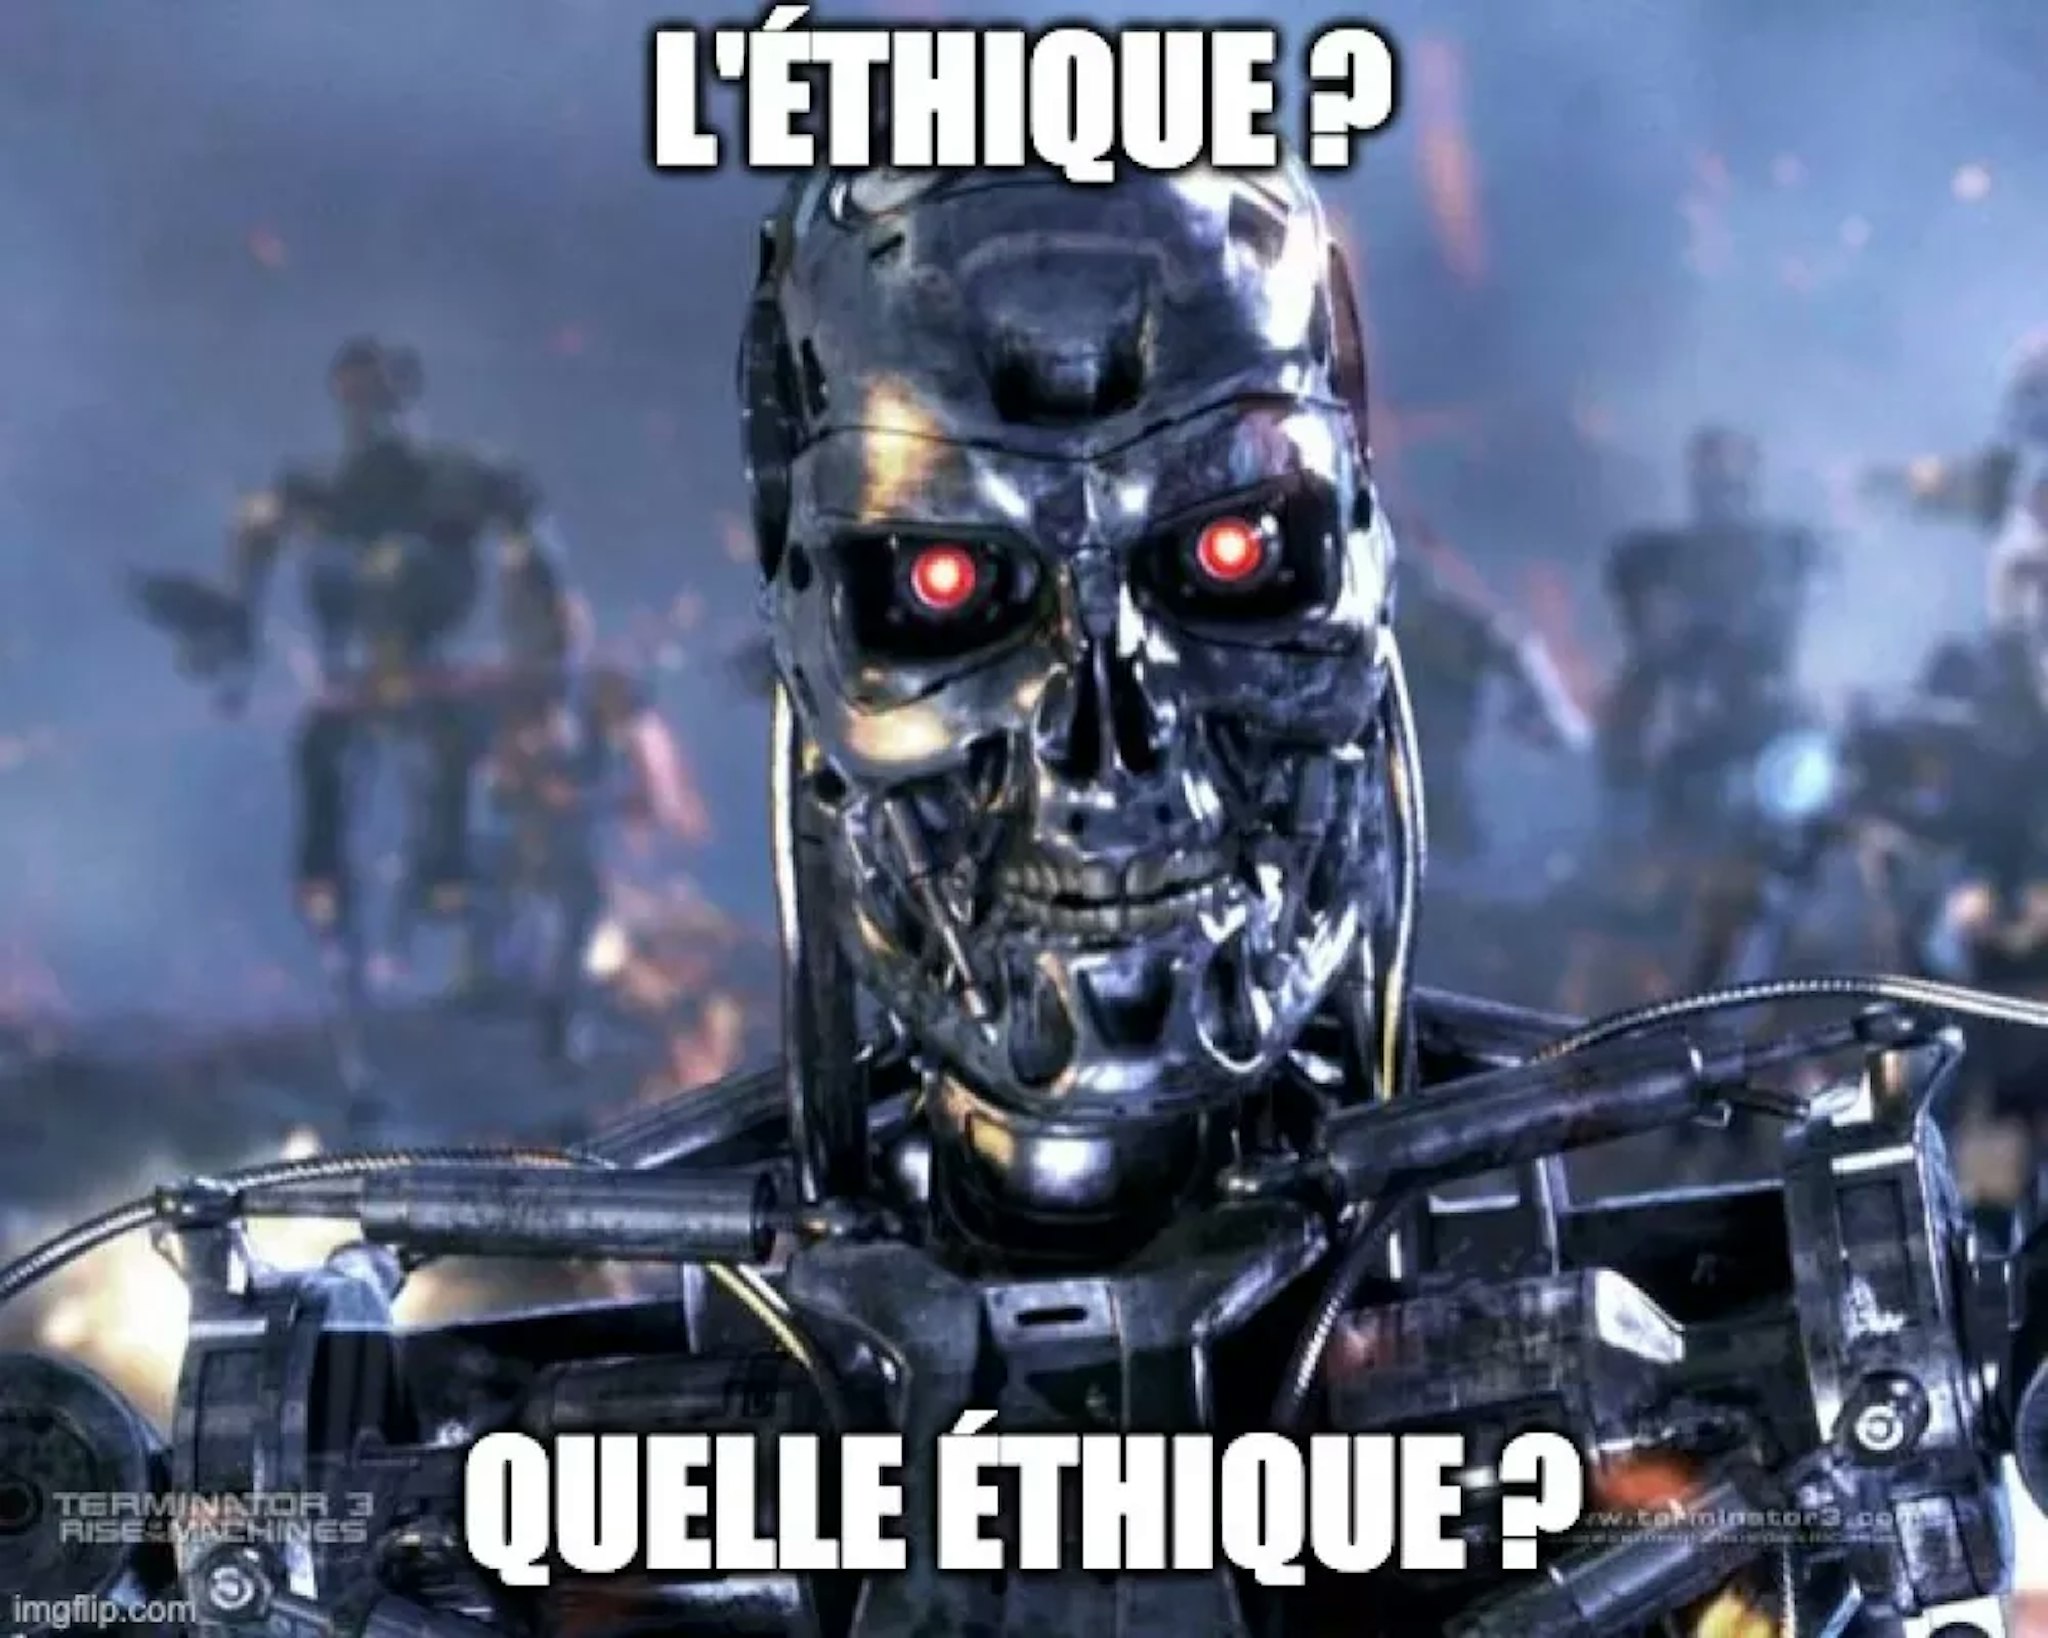 Image d'un robot T-800 avec texte "L'éthique ? Quelle éthique ?"